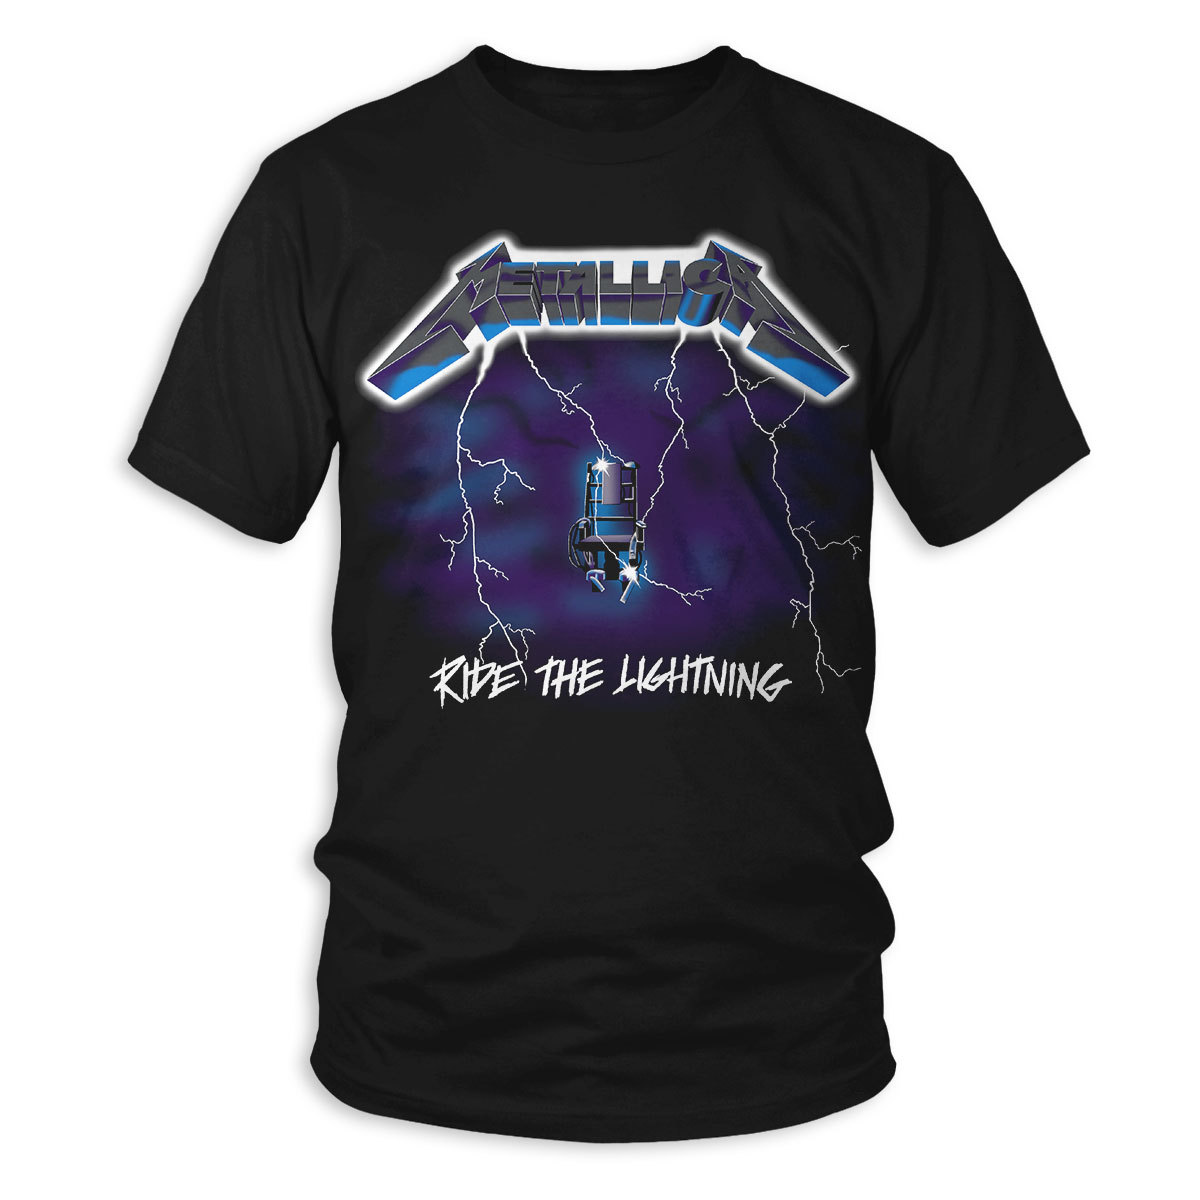 Metallica 'Ride The Lightning' T-Shirt NEW & OFFICIAL!